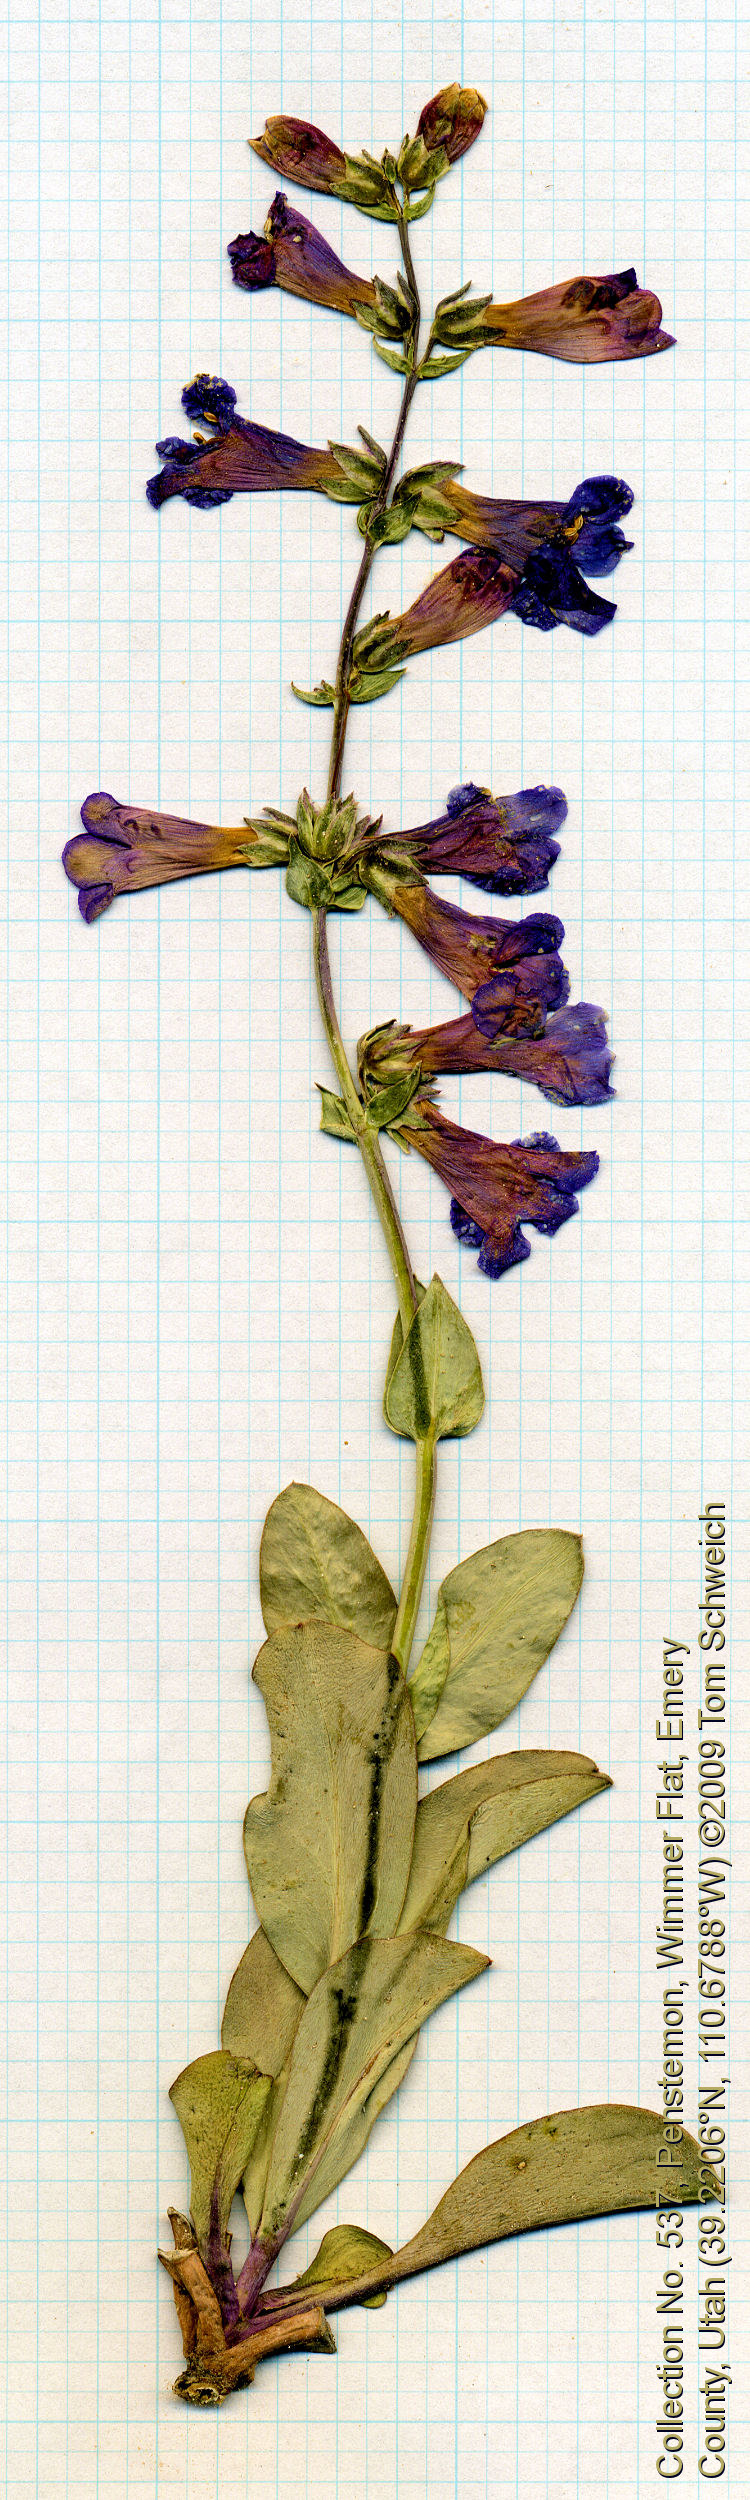 Plantaginaceae Penstemon carnosus